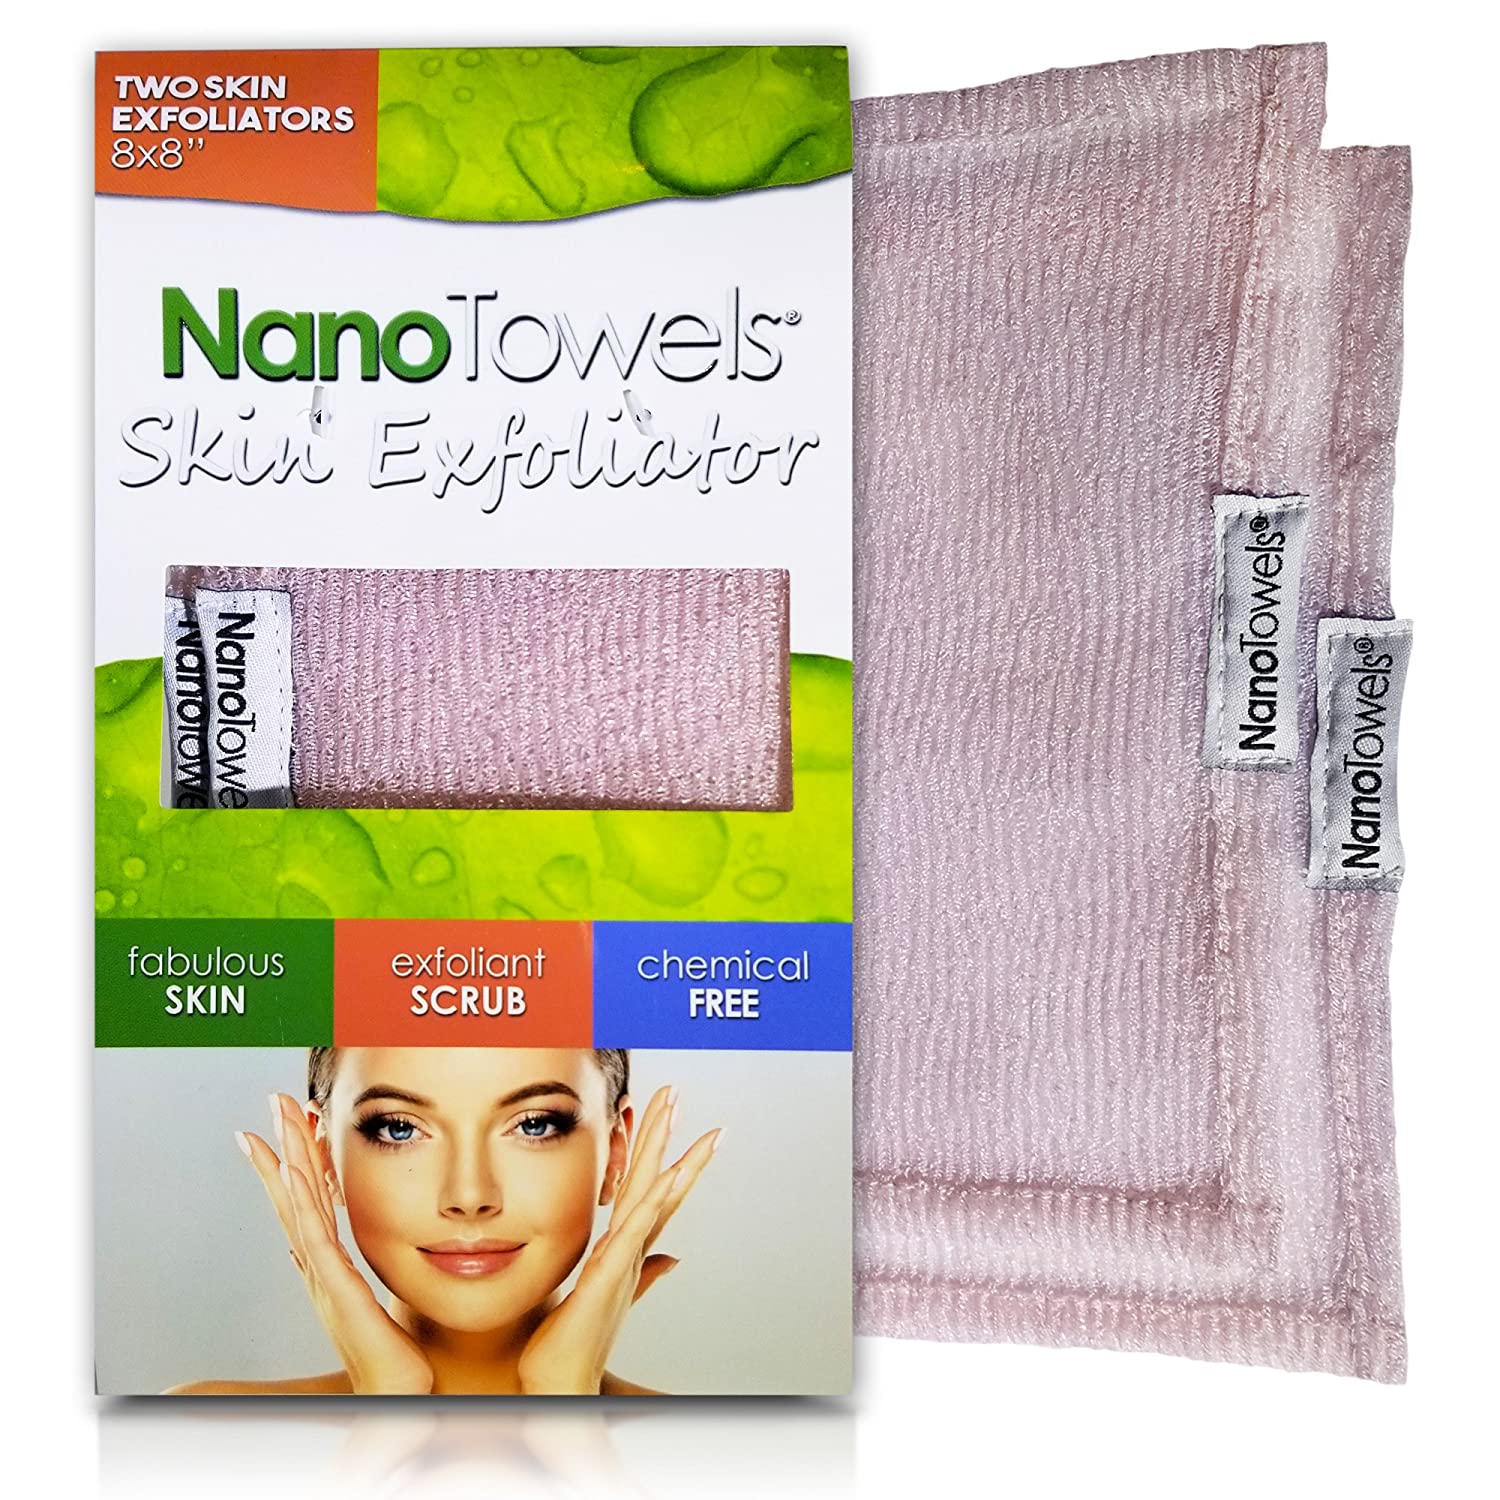 NanoTowels Skin Exfoliator